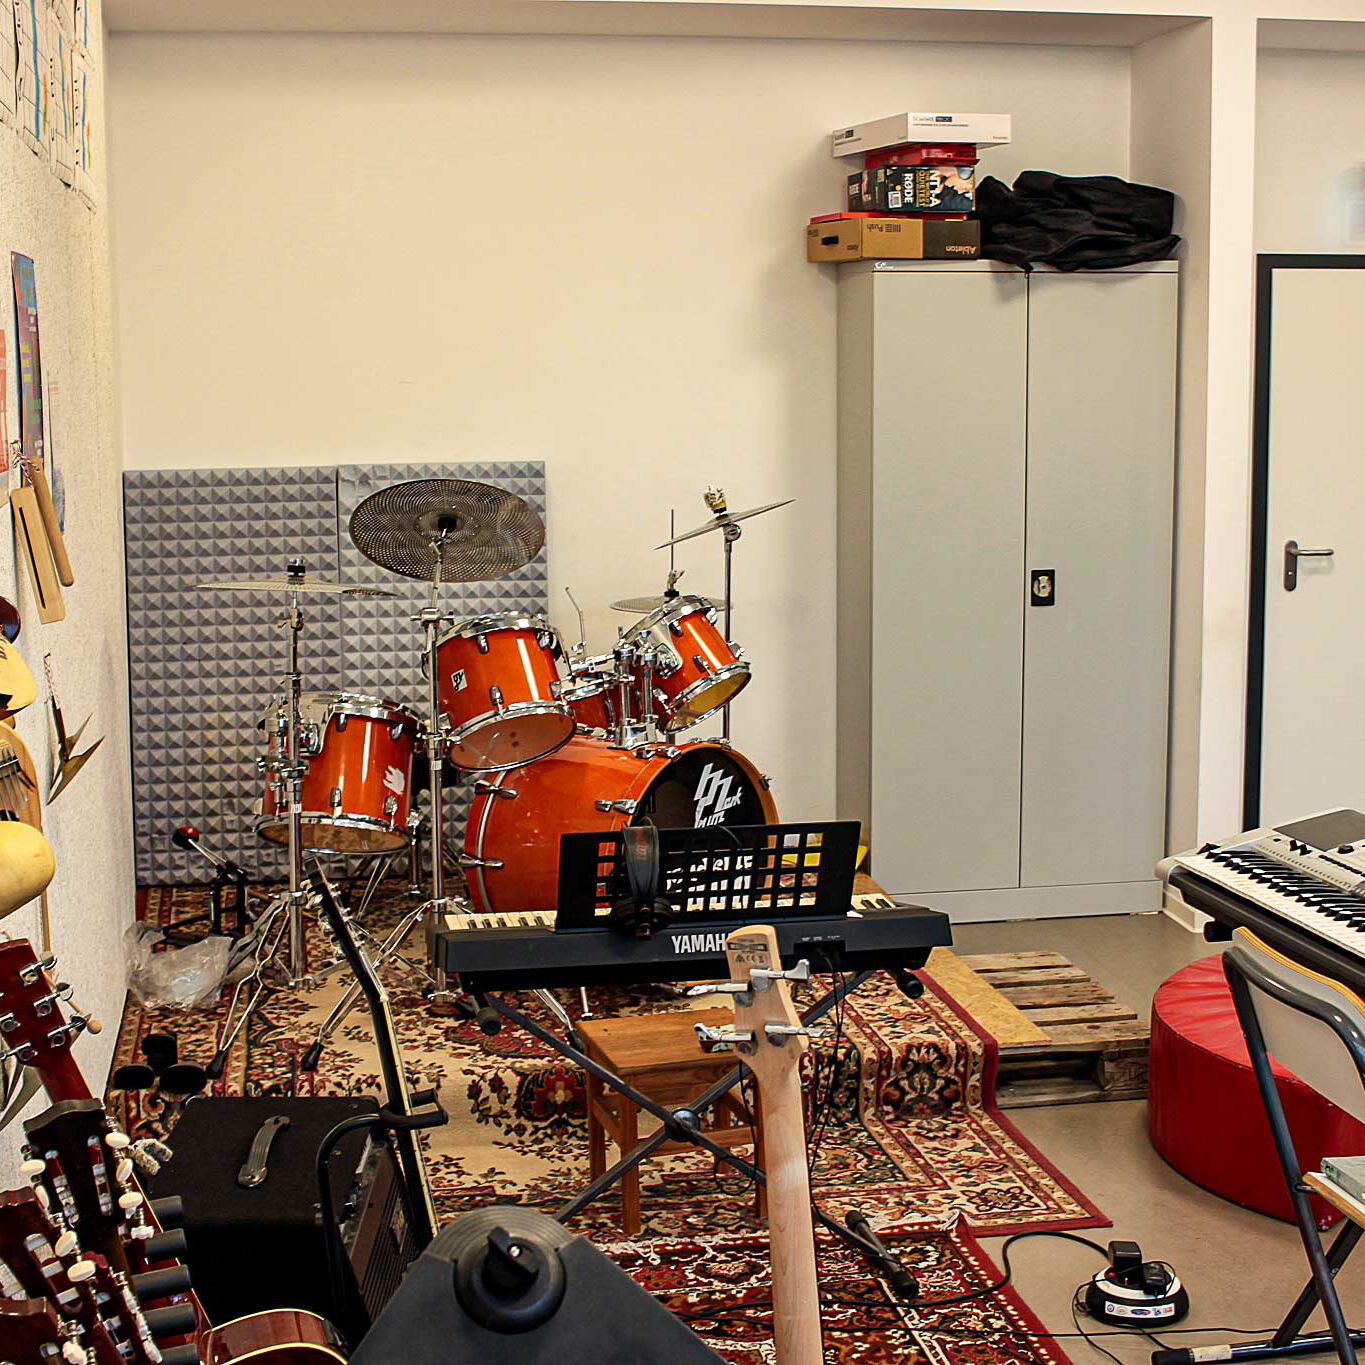 Der Raum bietet ein Schlagzeug, Gitarren, Keyboard und andere Musikinstrumente für die Klangwerkstatt.